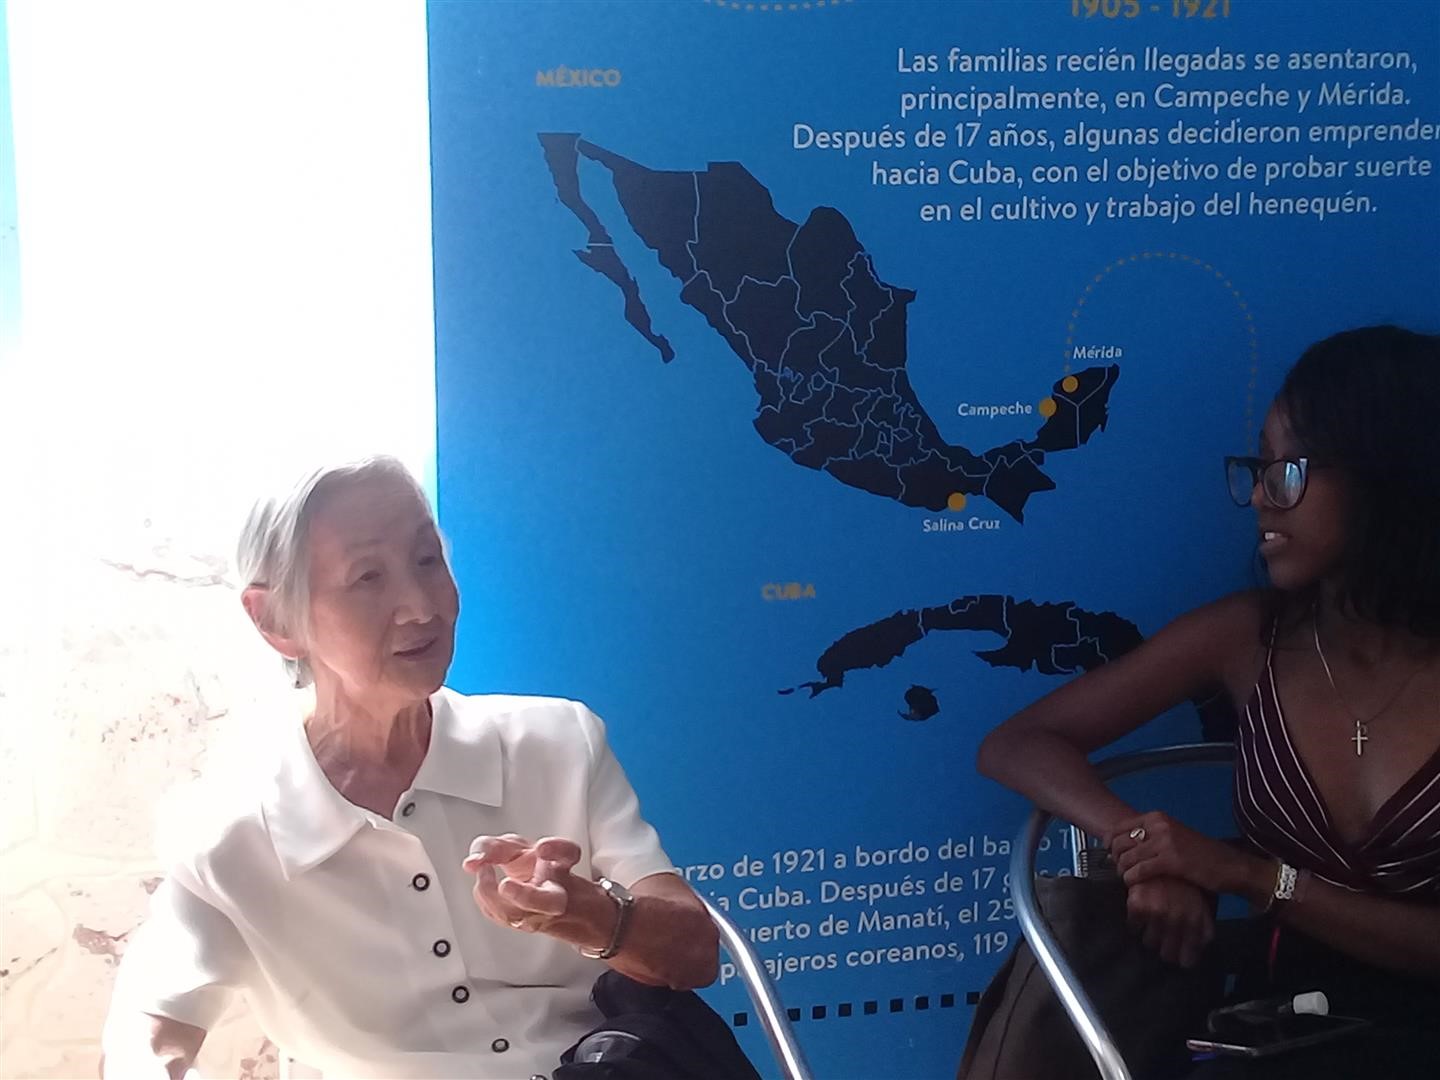 Martha Lim Kim, miembro de la tercera generación de cubanos coreanos, comenta como los inmigrantes coreanos llegaron a Cuba.